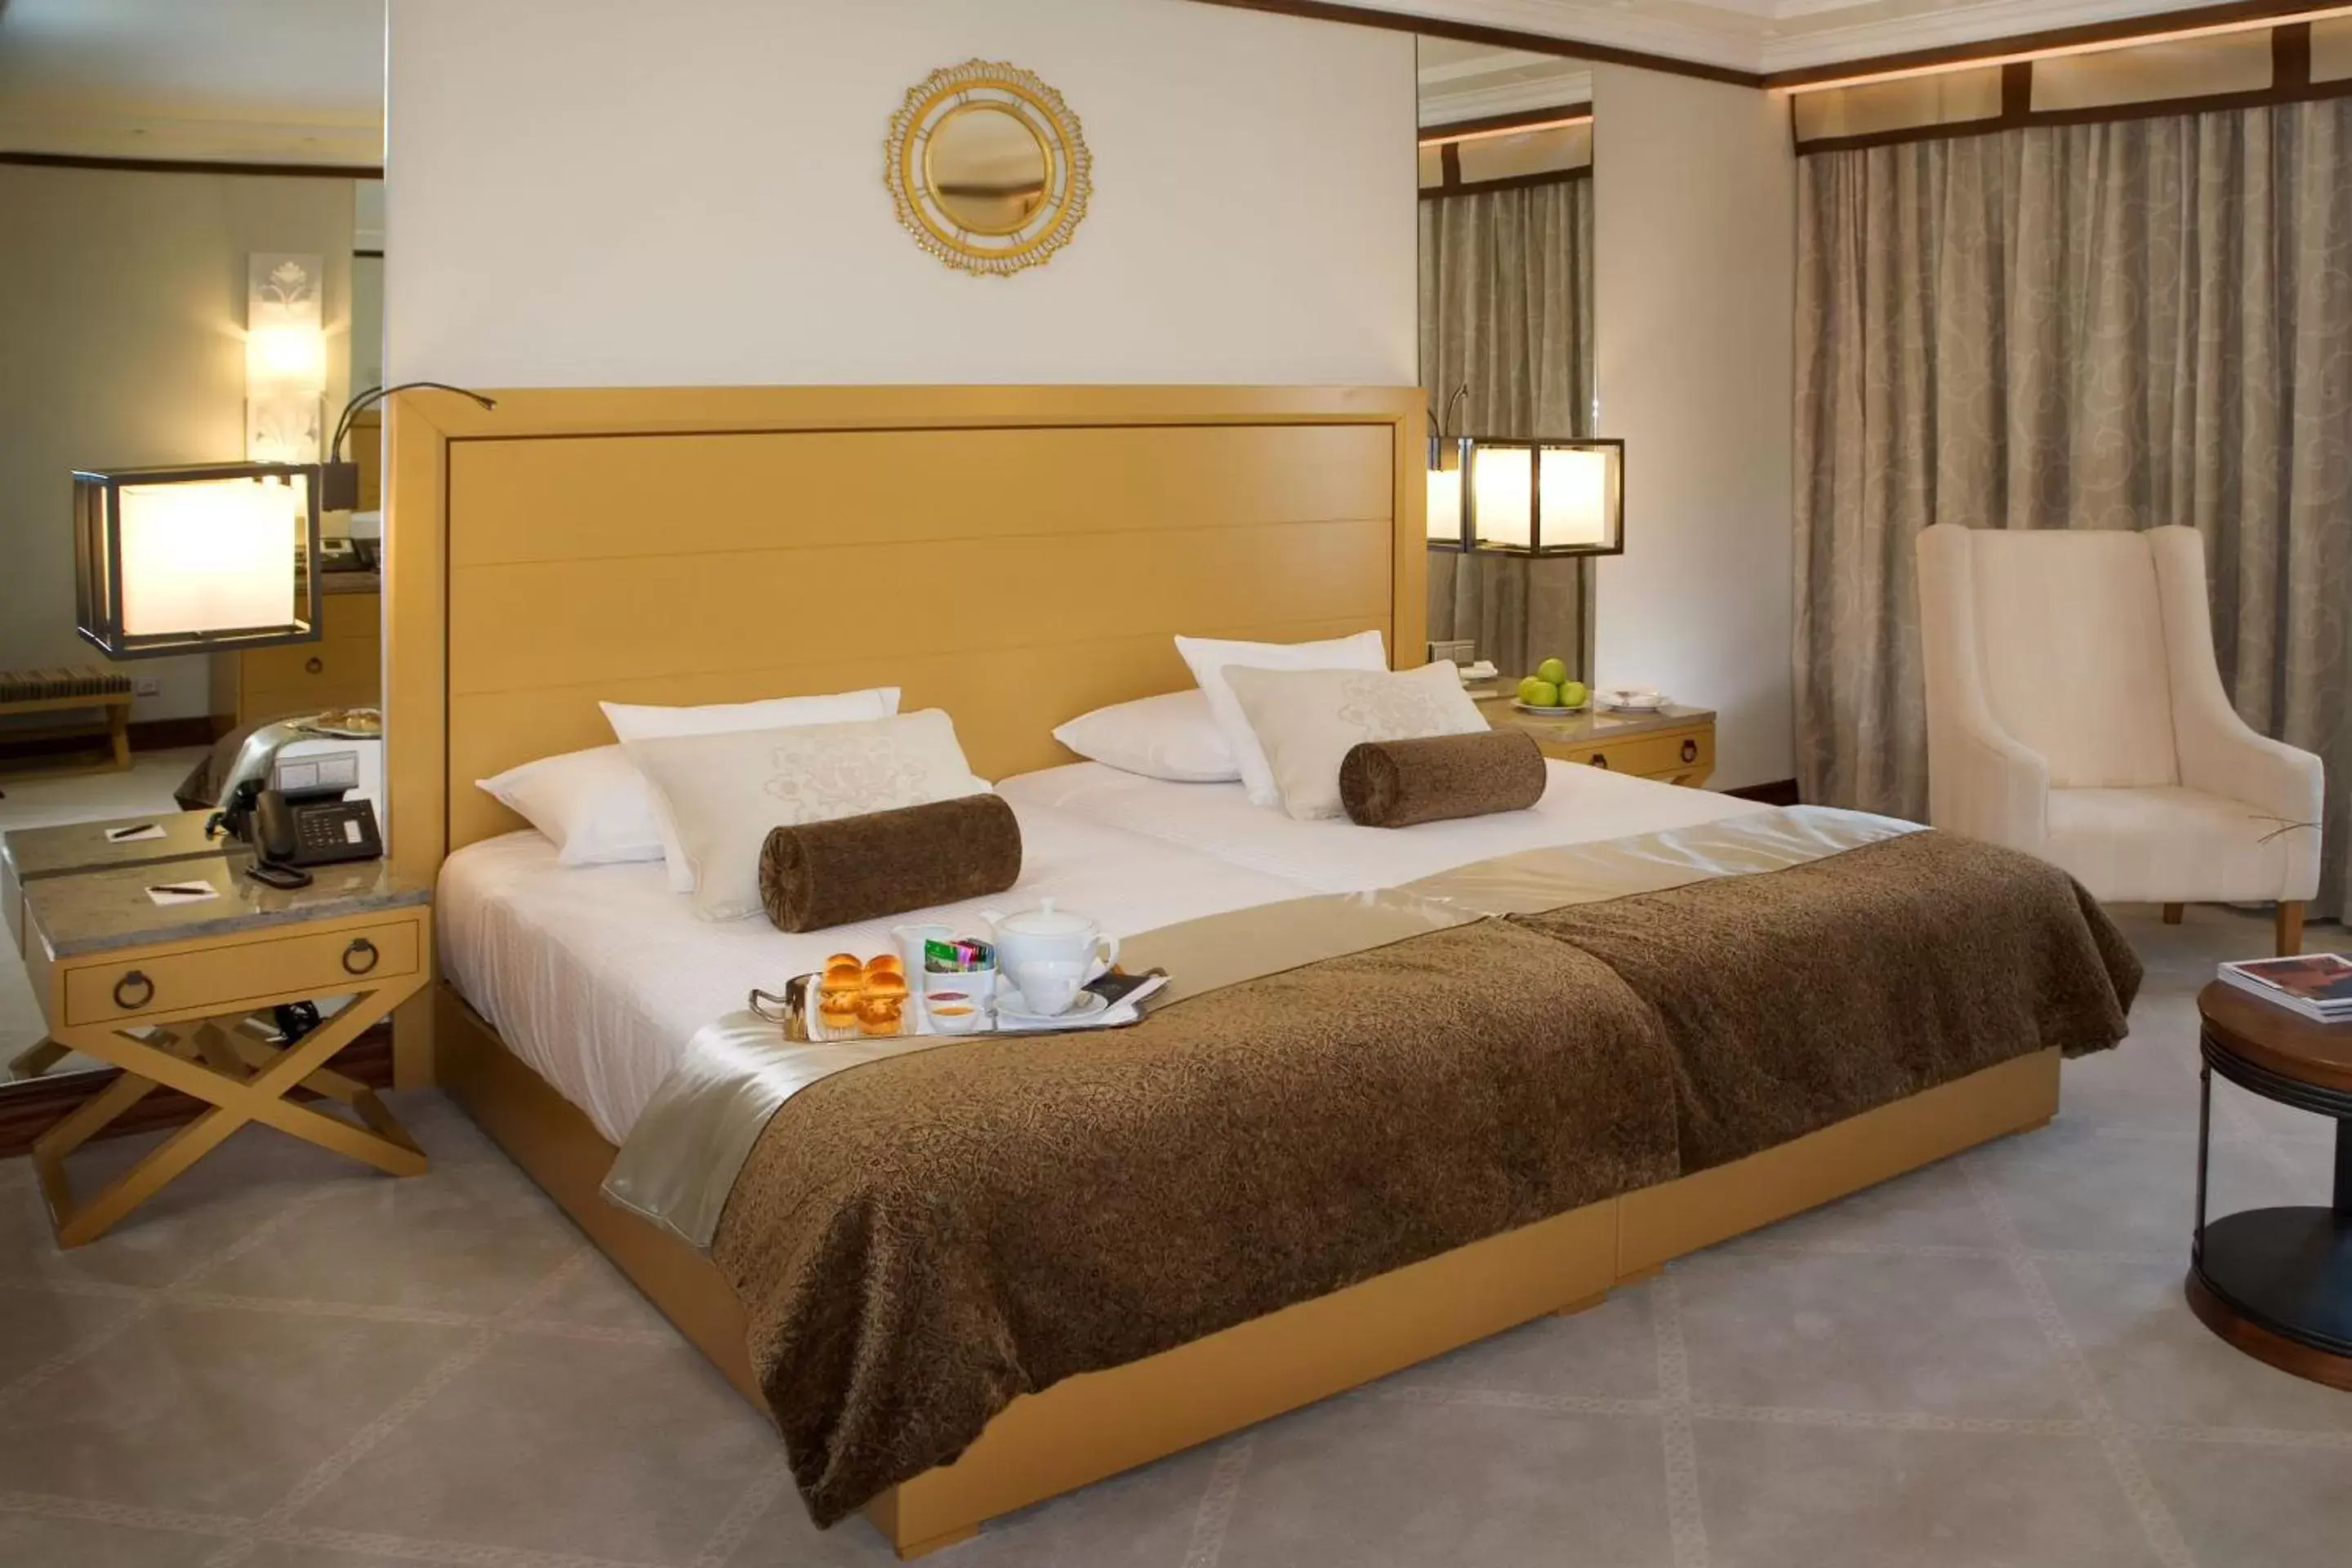 Bedroom, Bed in Grande Real Villa Itália Hotel & Spa